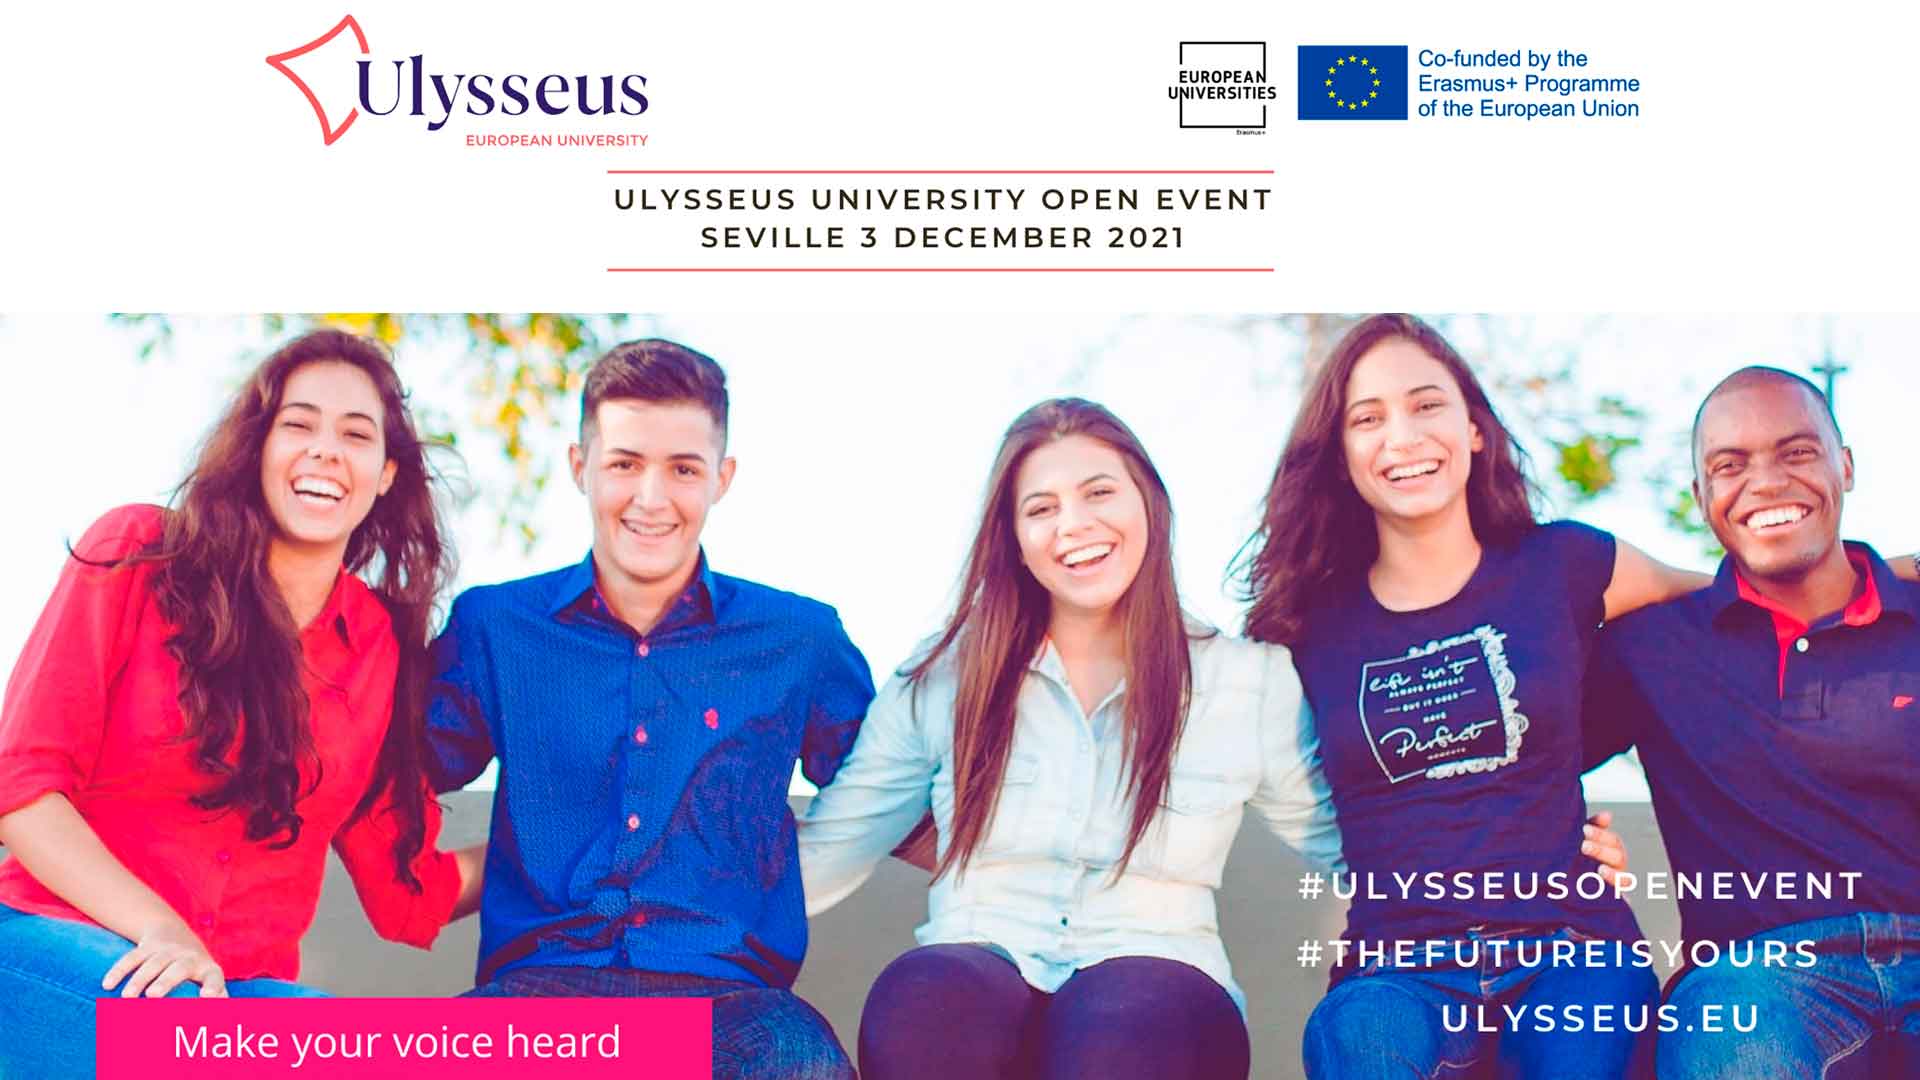 Študenti európskej univerzity Ulysseus vyjadrujú svoje názory na kľúčové otázky k aktuálnym témam európskeho vzdelávania diskutovaným na budúcoročnej Konferencii o budúcnosti Európy